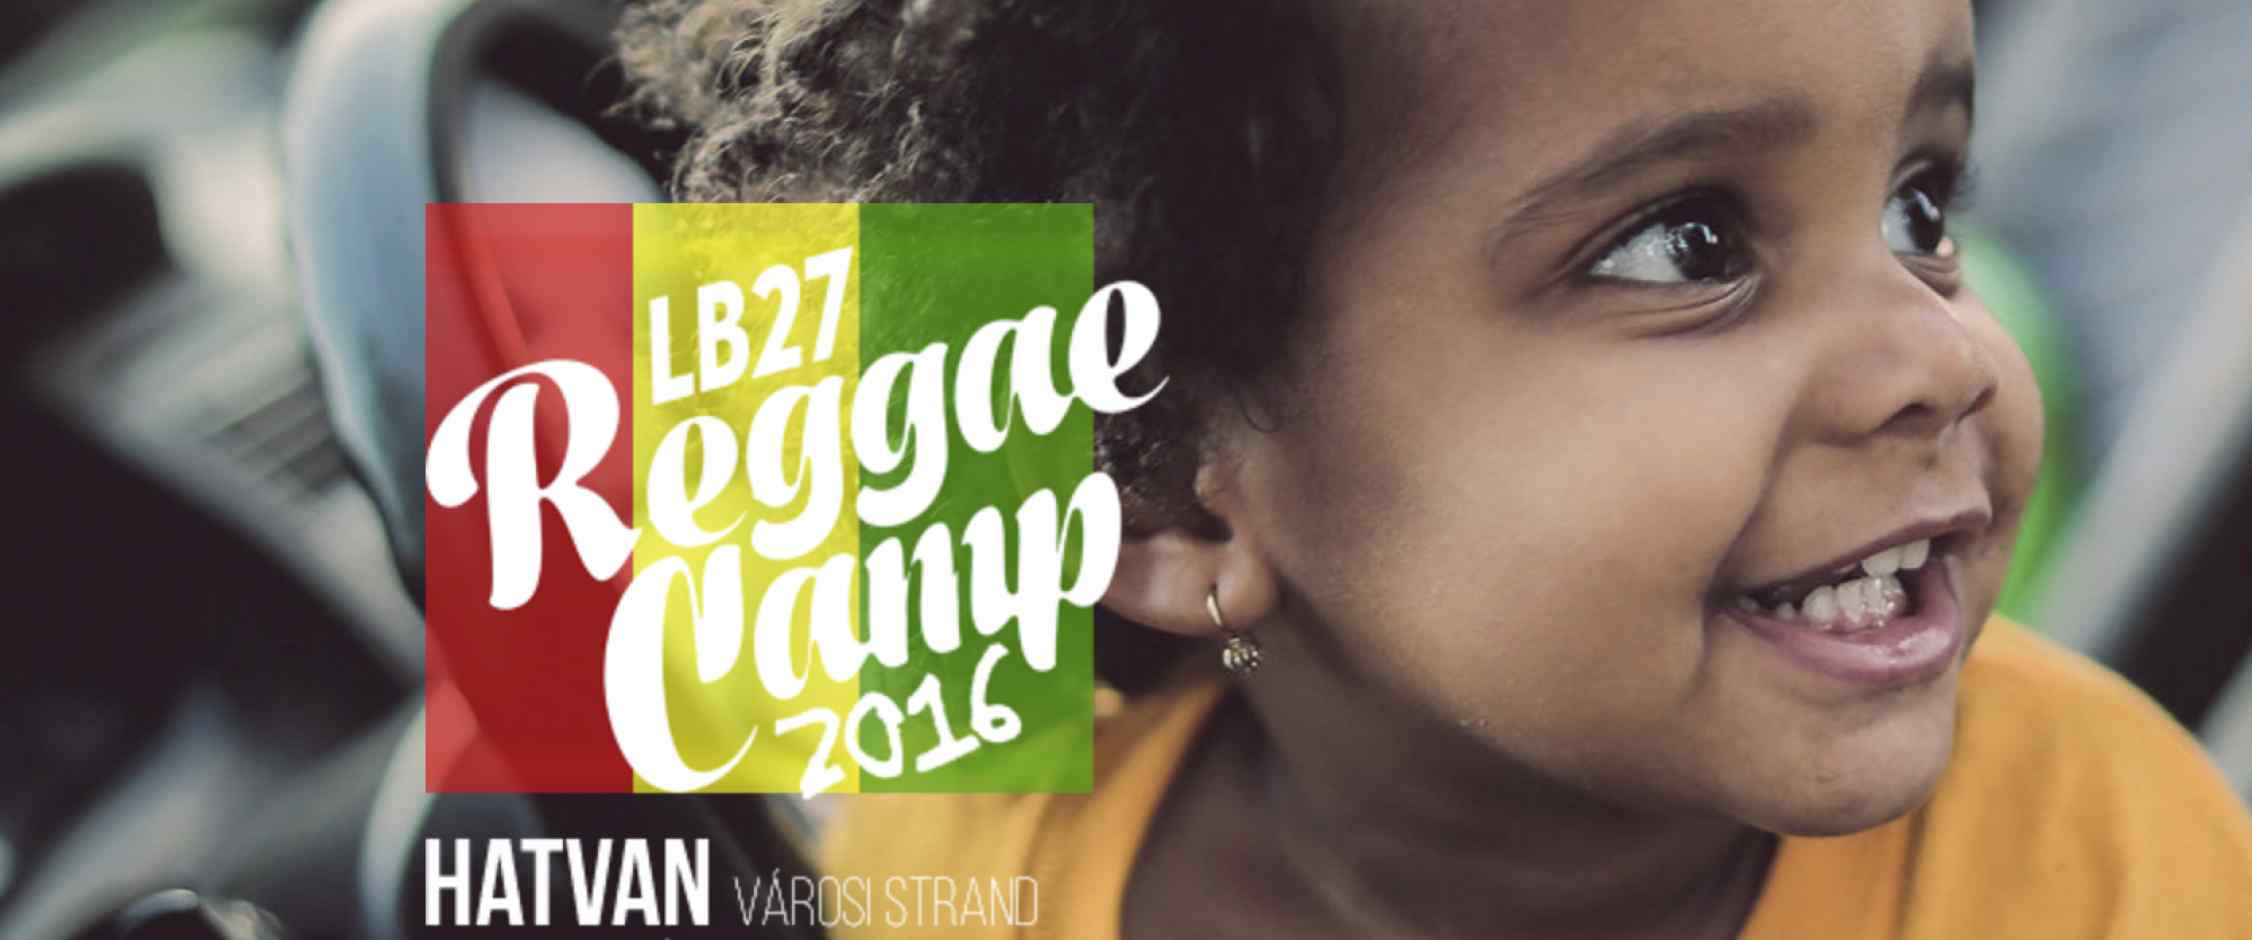 Lb27 Reggae Camp weboldal készítés